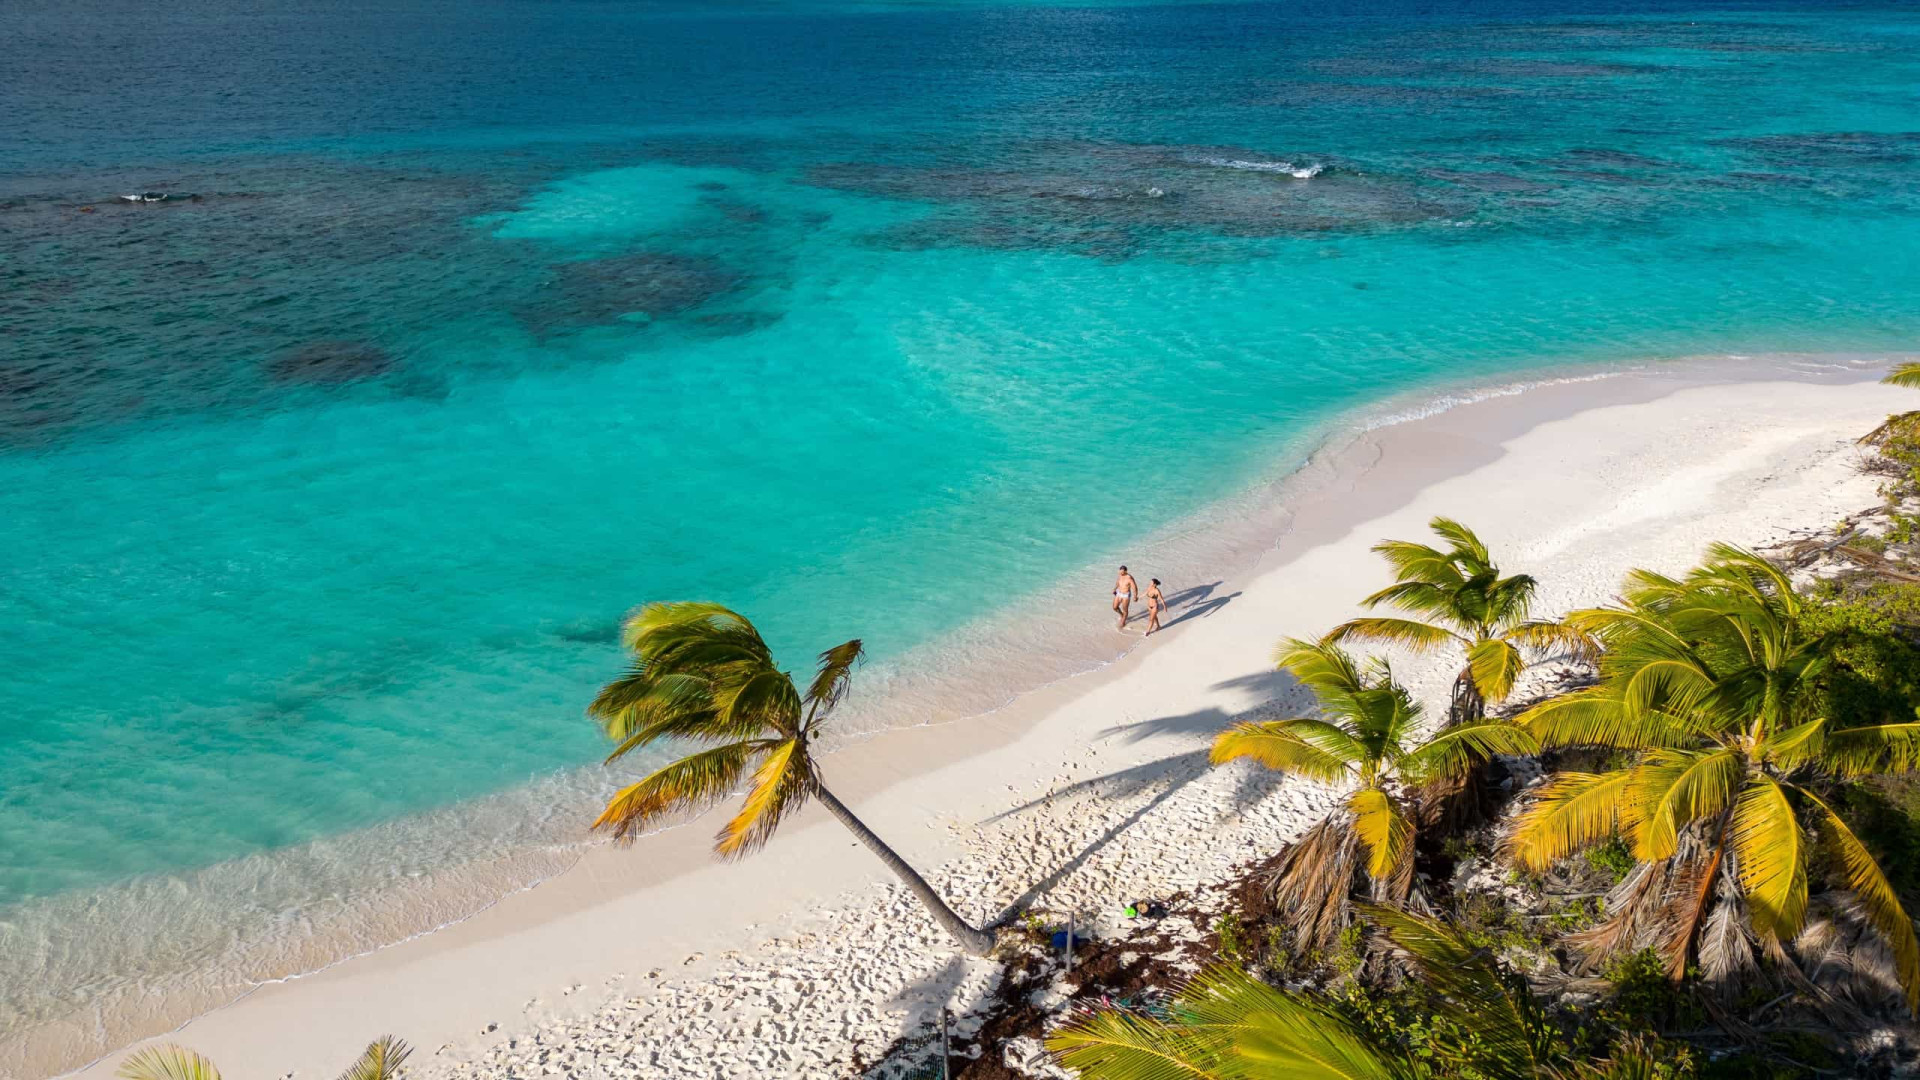 Milionário procura casal para tomar conta de ilha no Caribe. Paga 170 mil